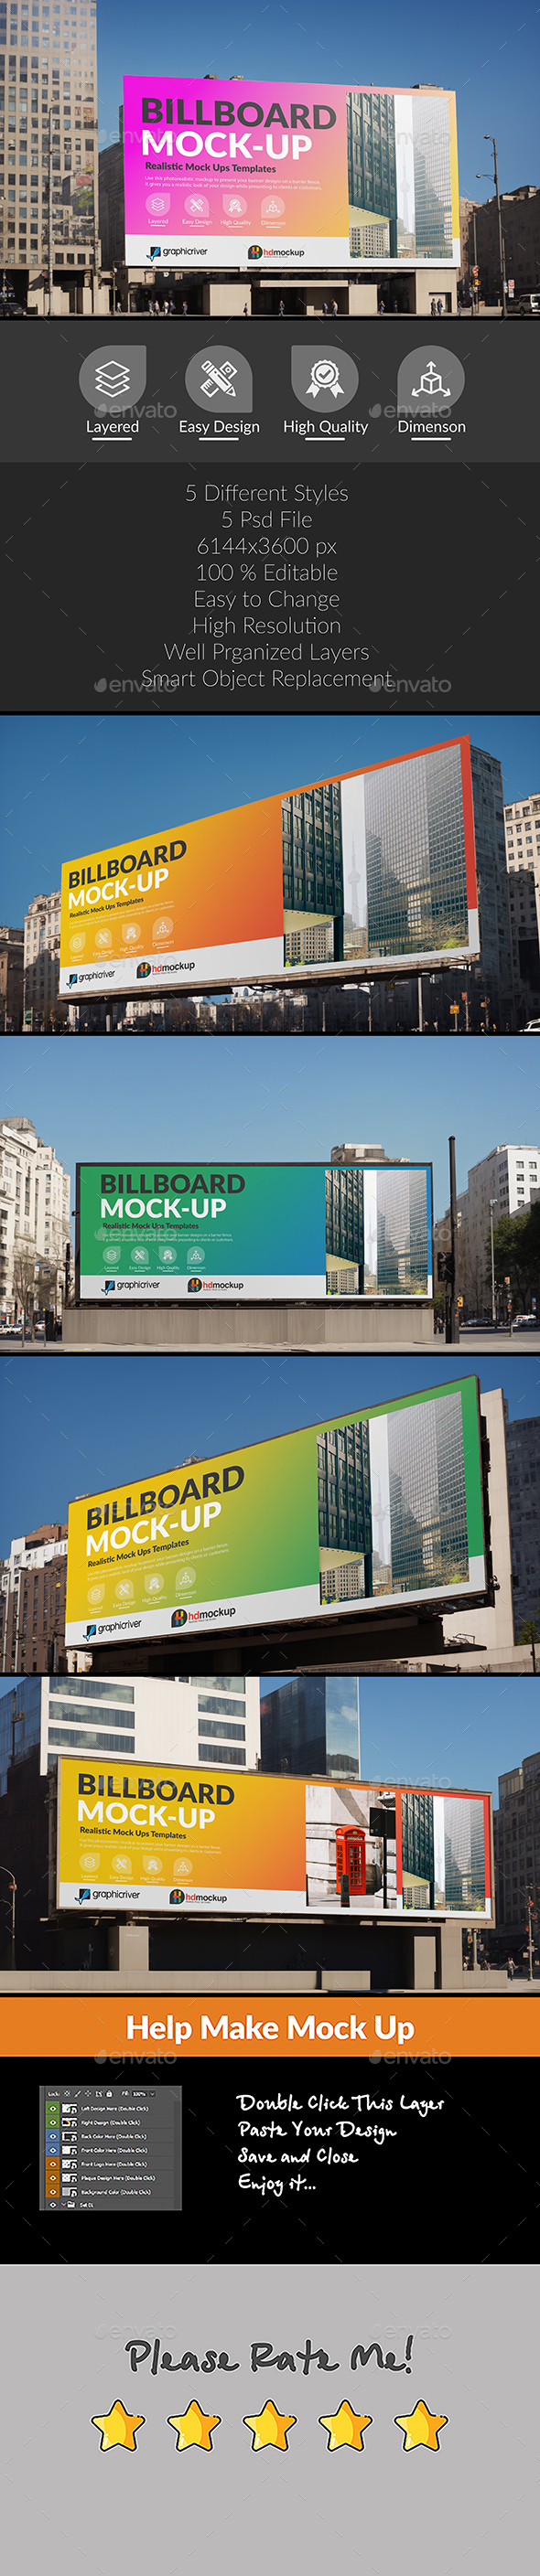 Billboard Mock-up Set 02